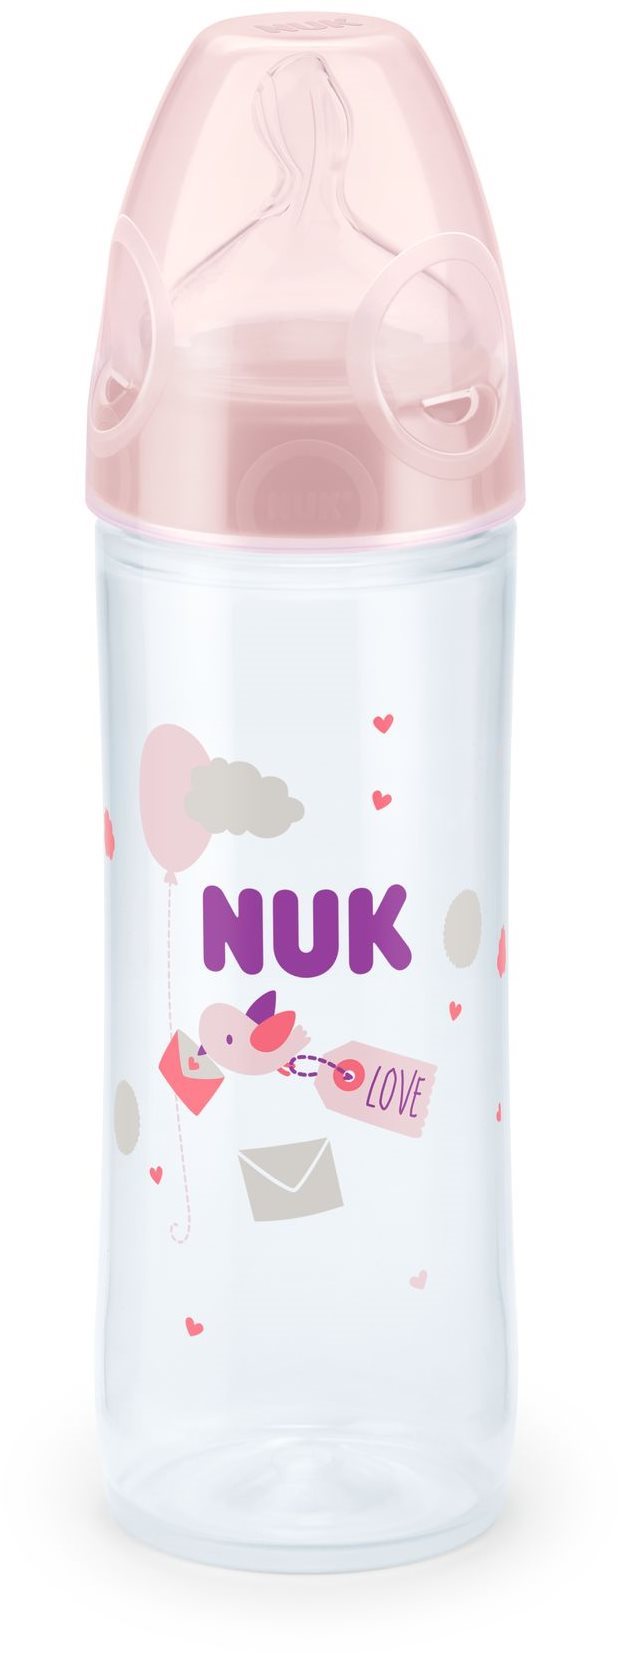 NUK Love Cumisüveg, 250 ml - rózsaszín